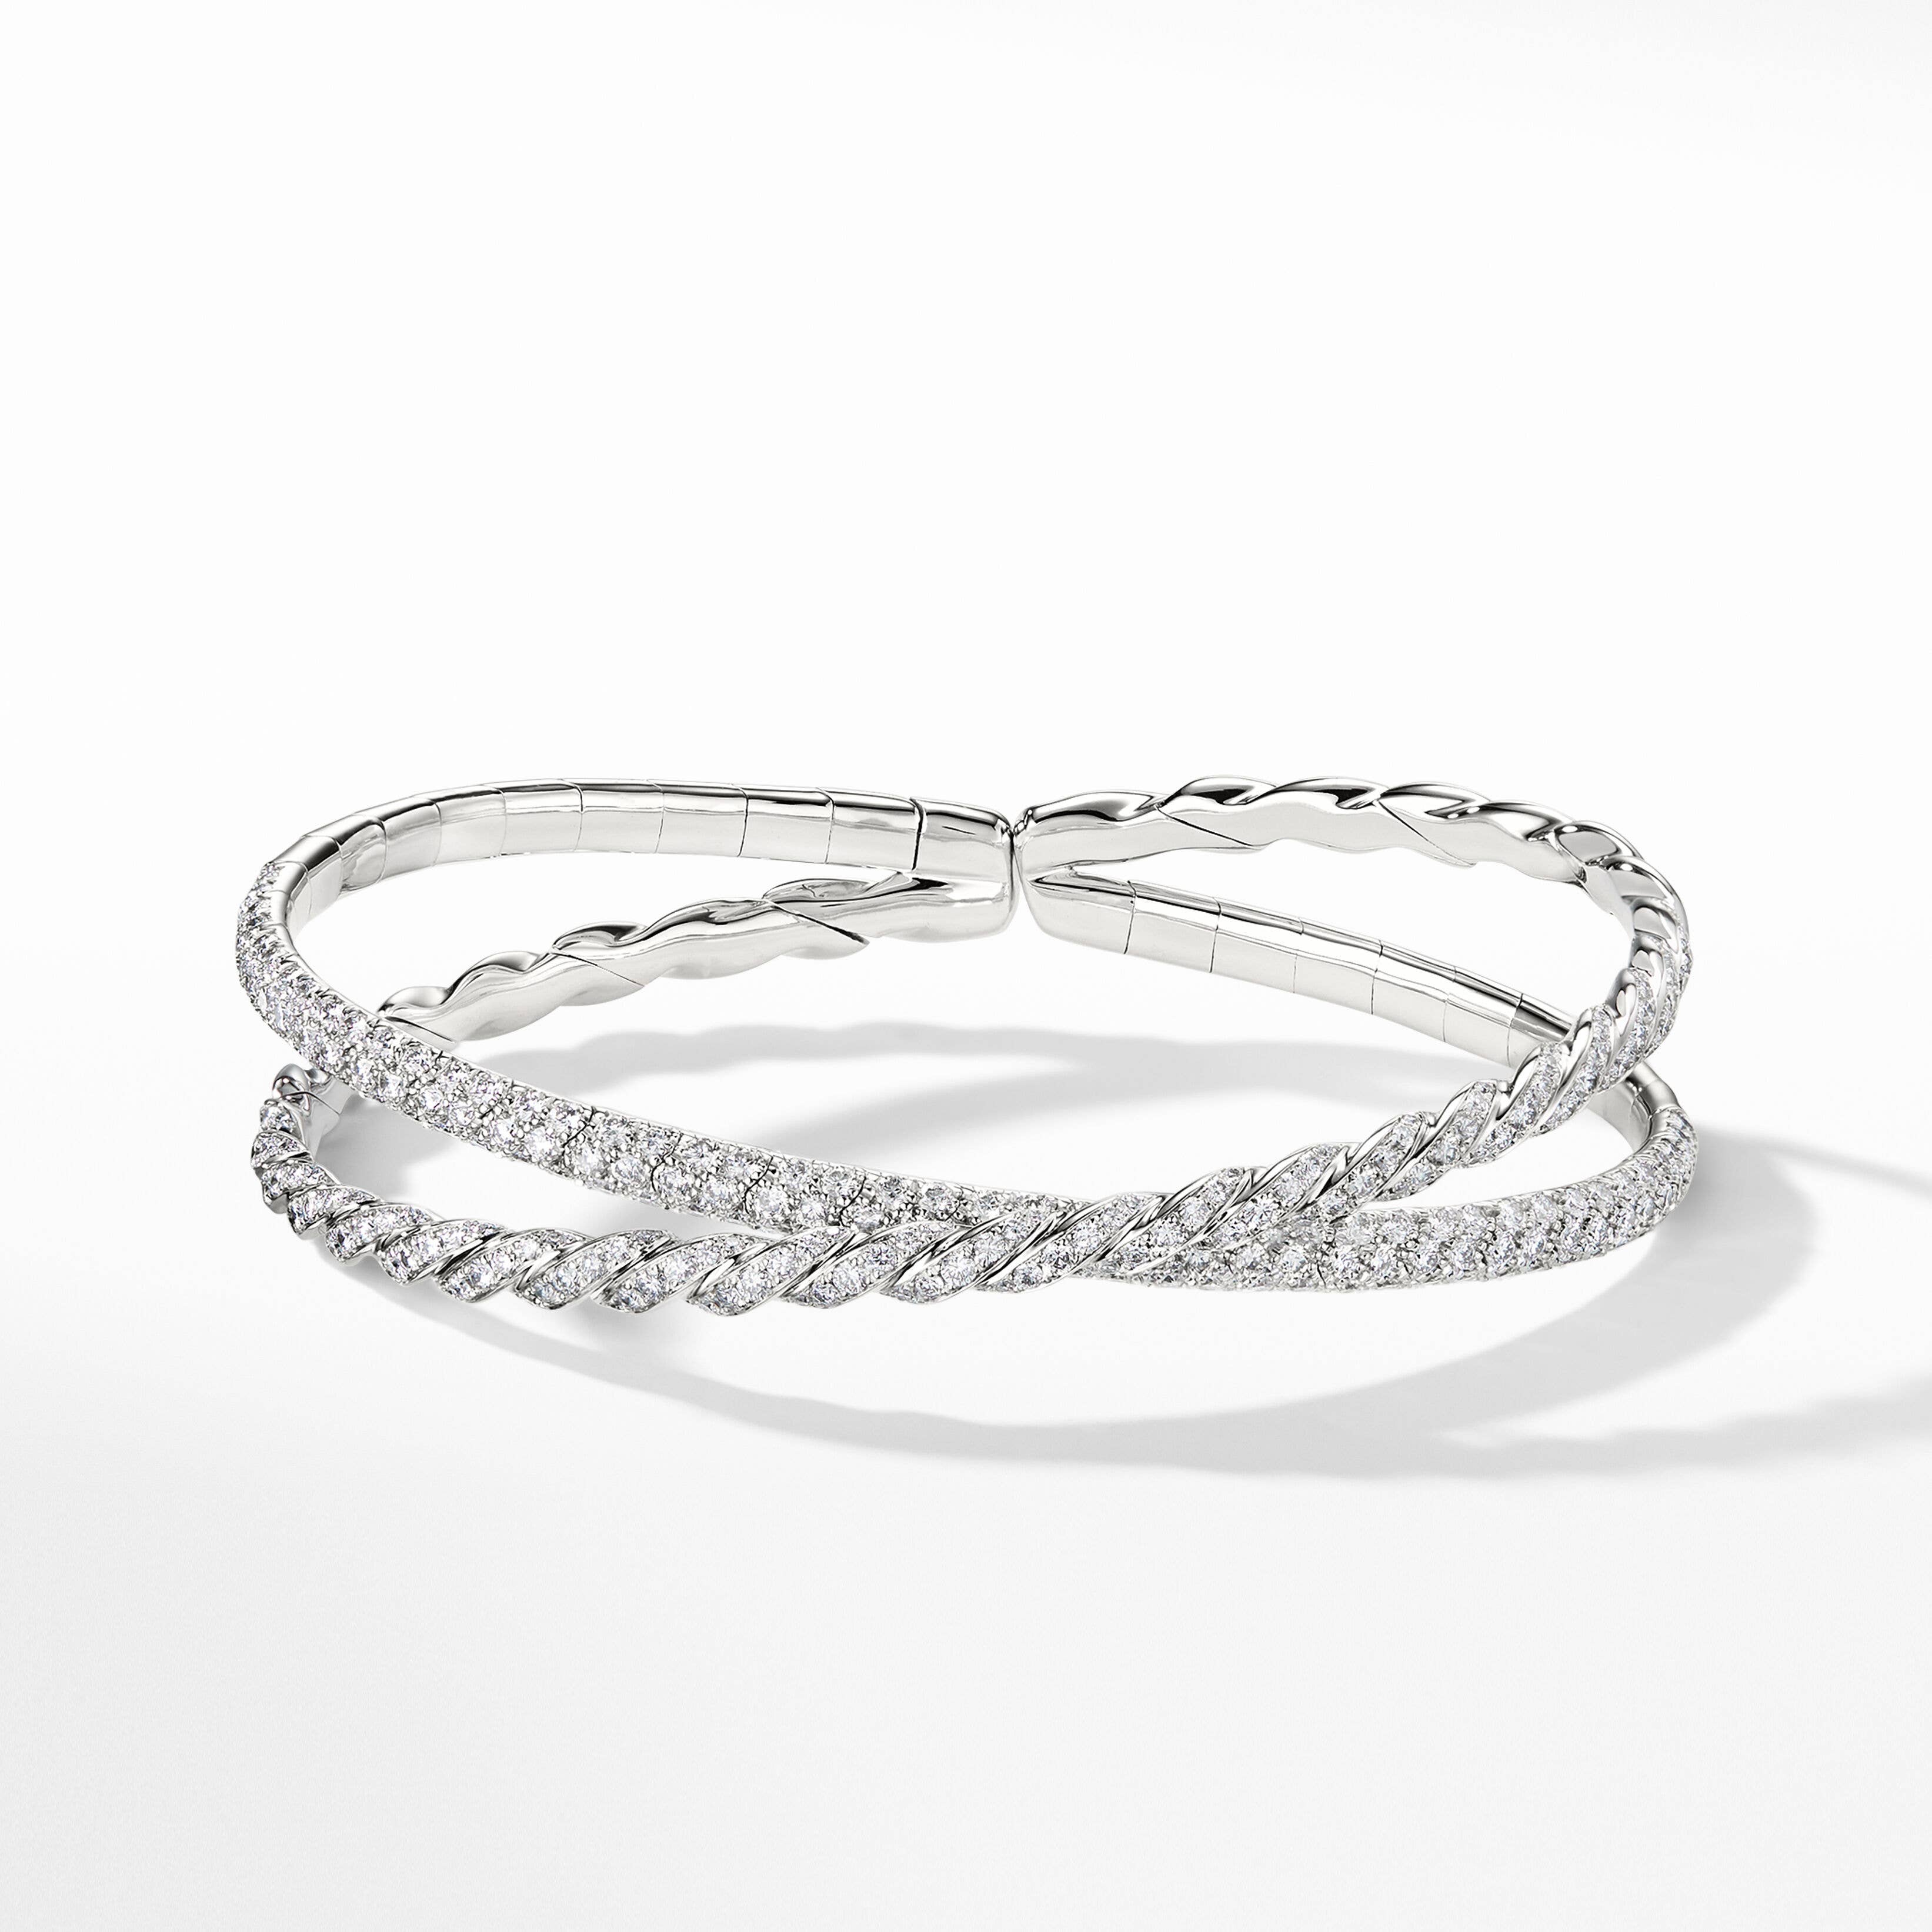 Pavéflex Two Row Bracelet in 18K White Gold with Diamonds